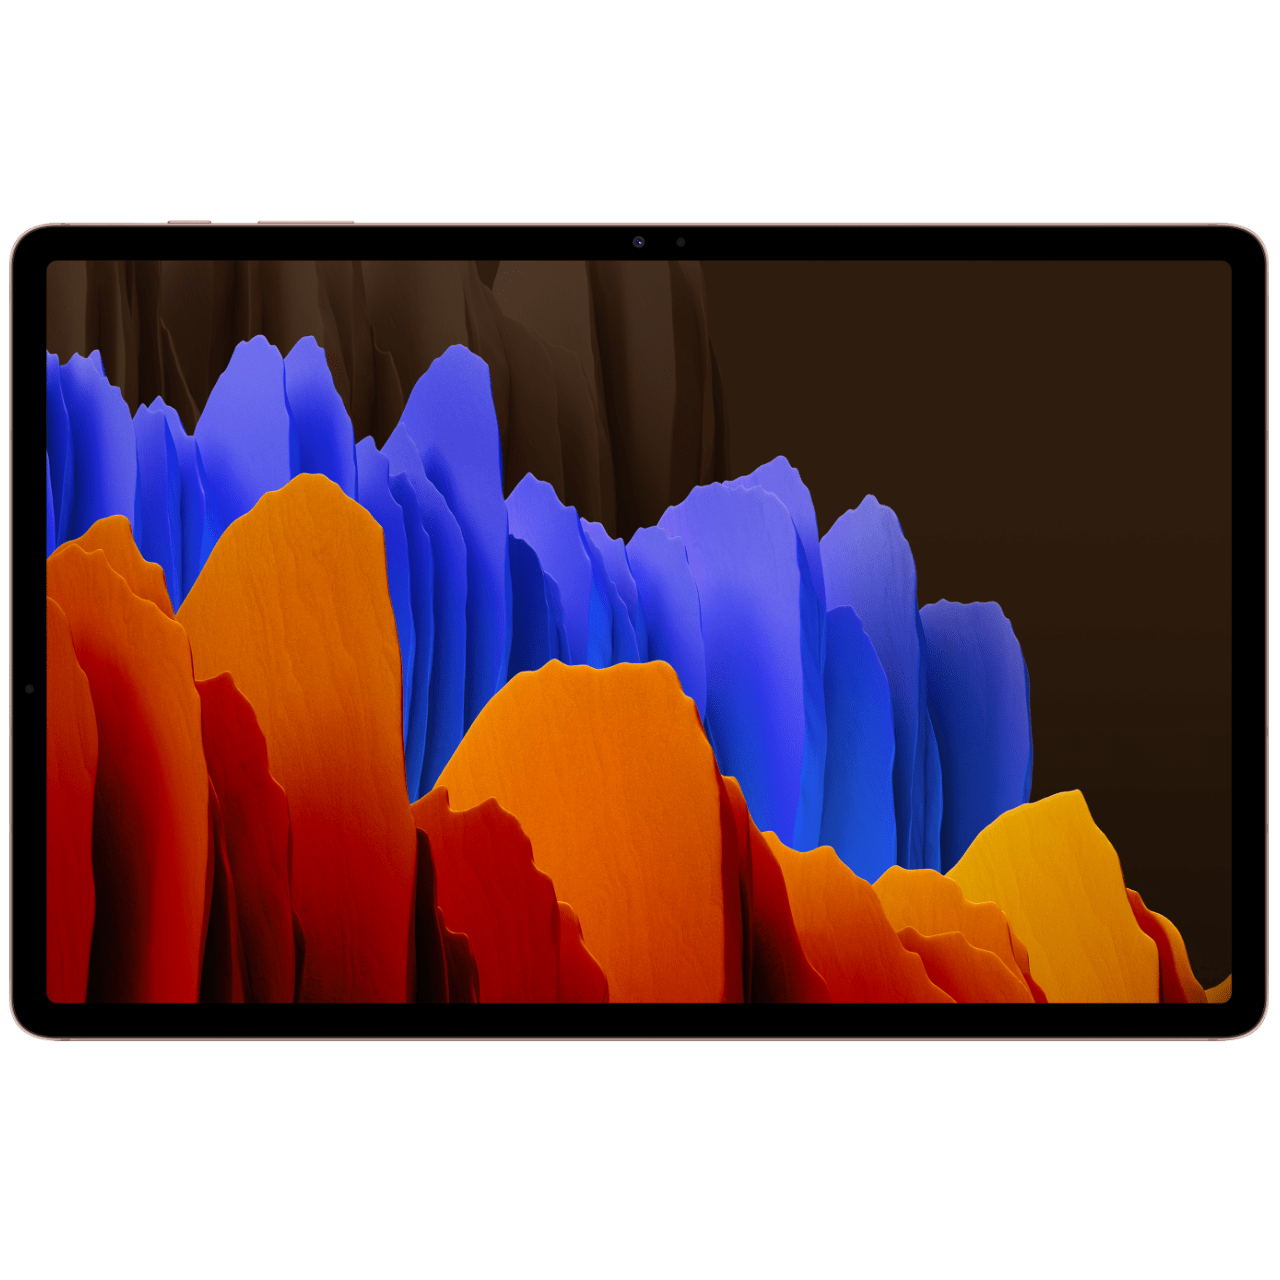 Samsung Galaxy Tab S7 : fiche technique, prix et discussion